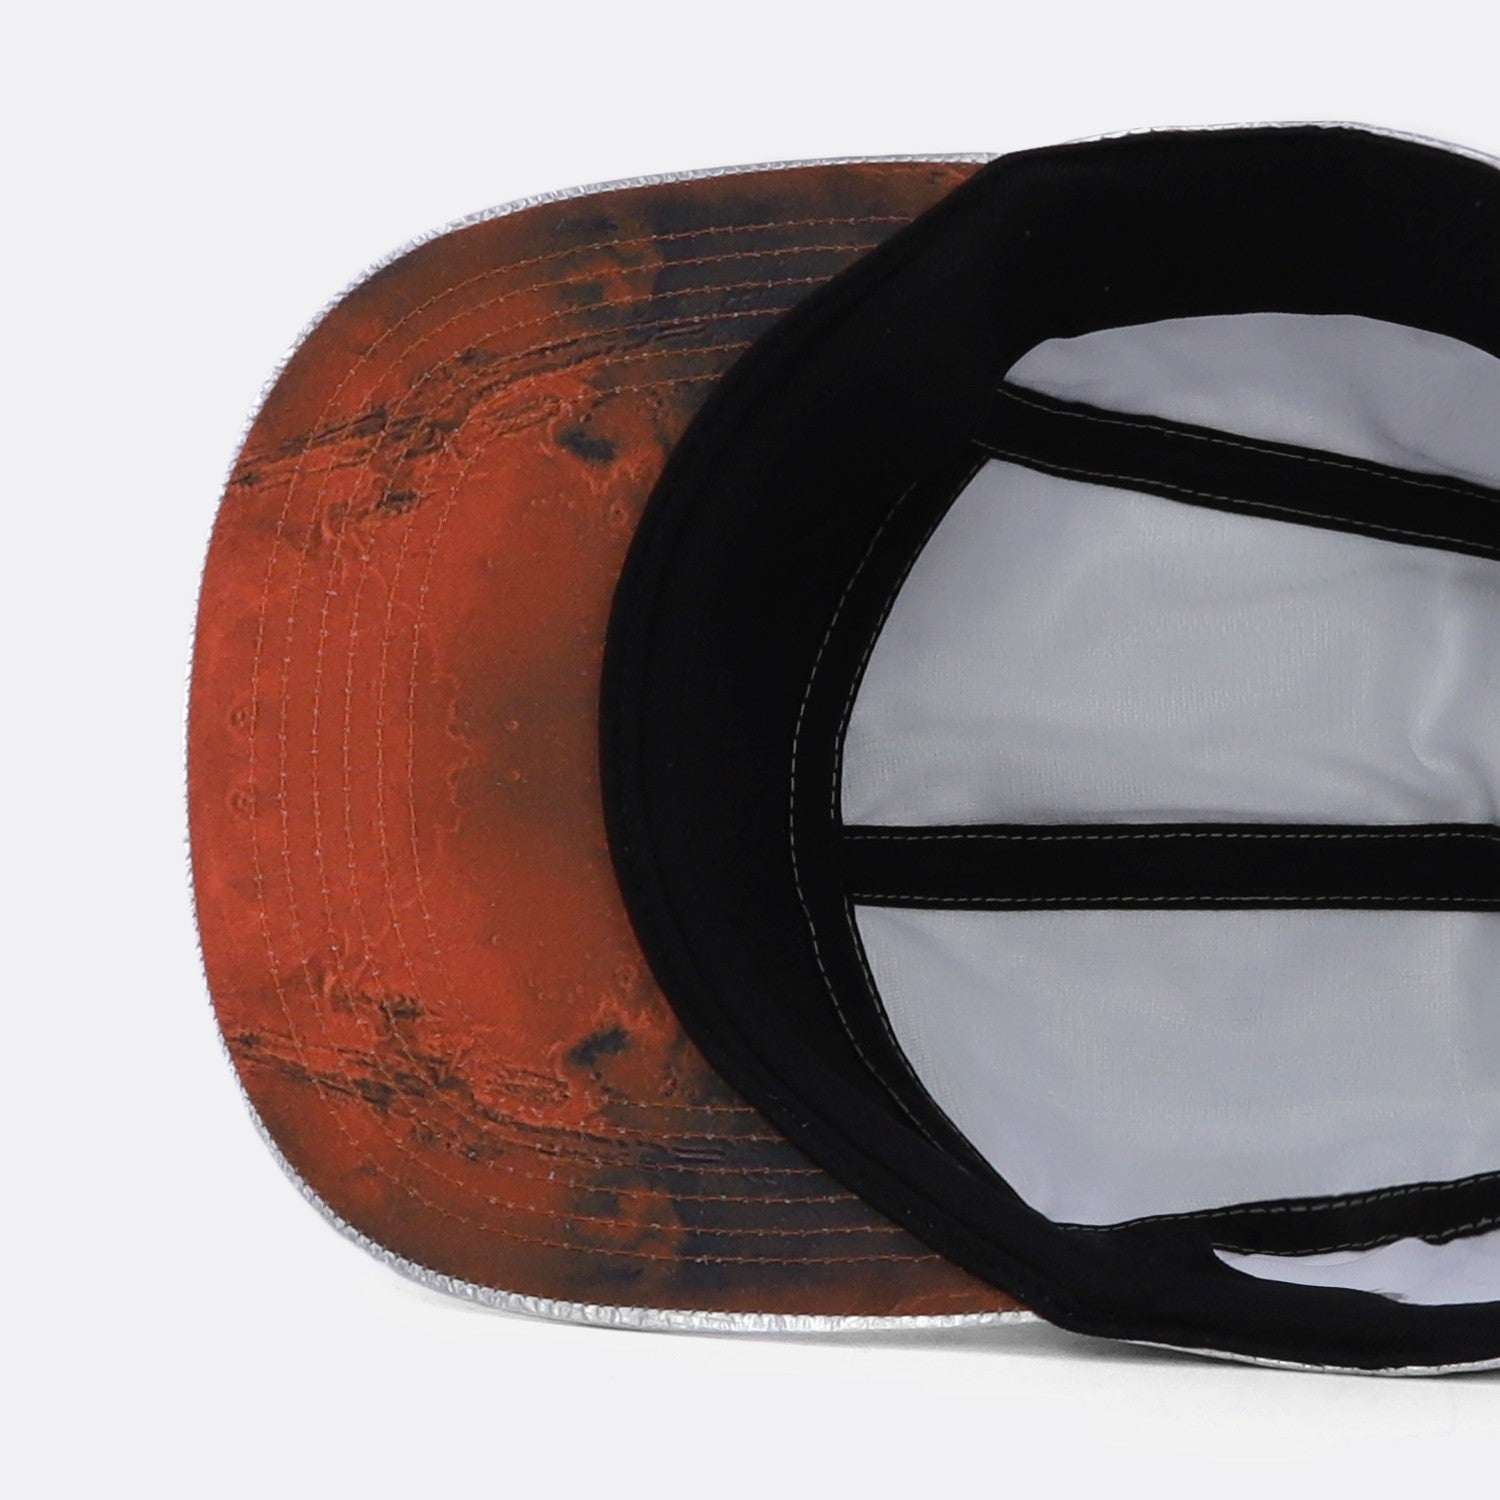 Afvoer formaat Fondsen Nike Mars Landing Cap– DistriSneaks